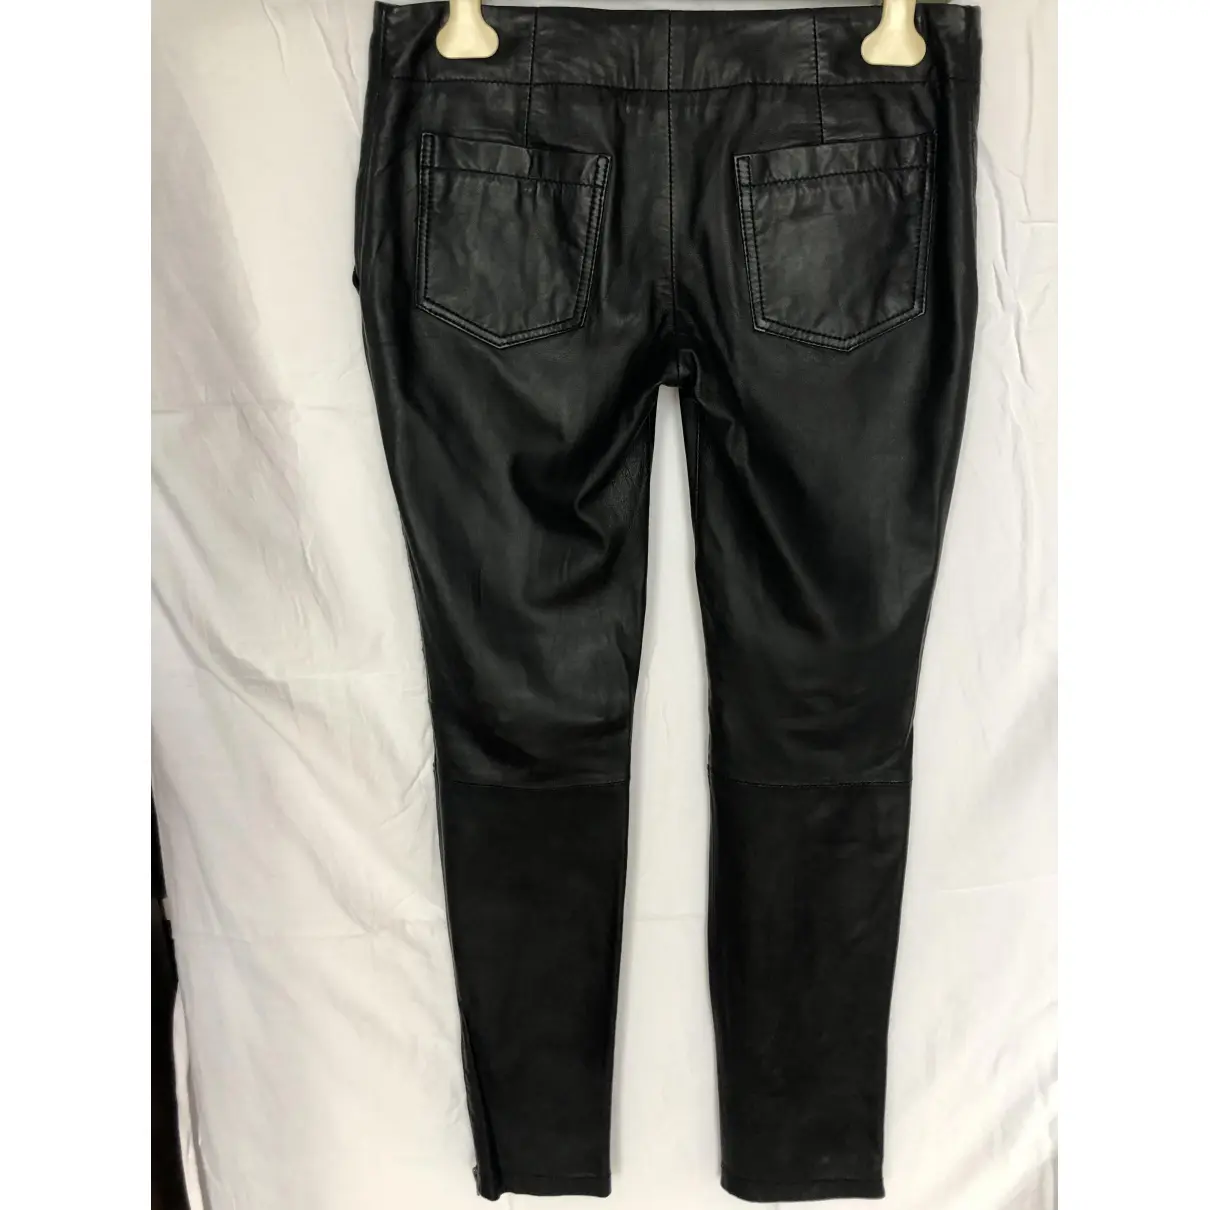 Buy Bel Air Leather slim pants online